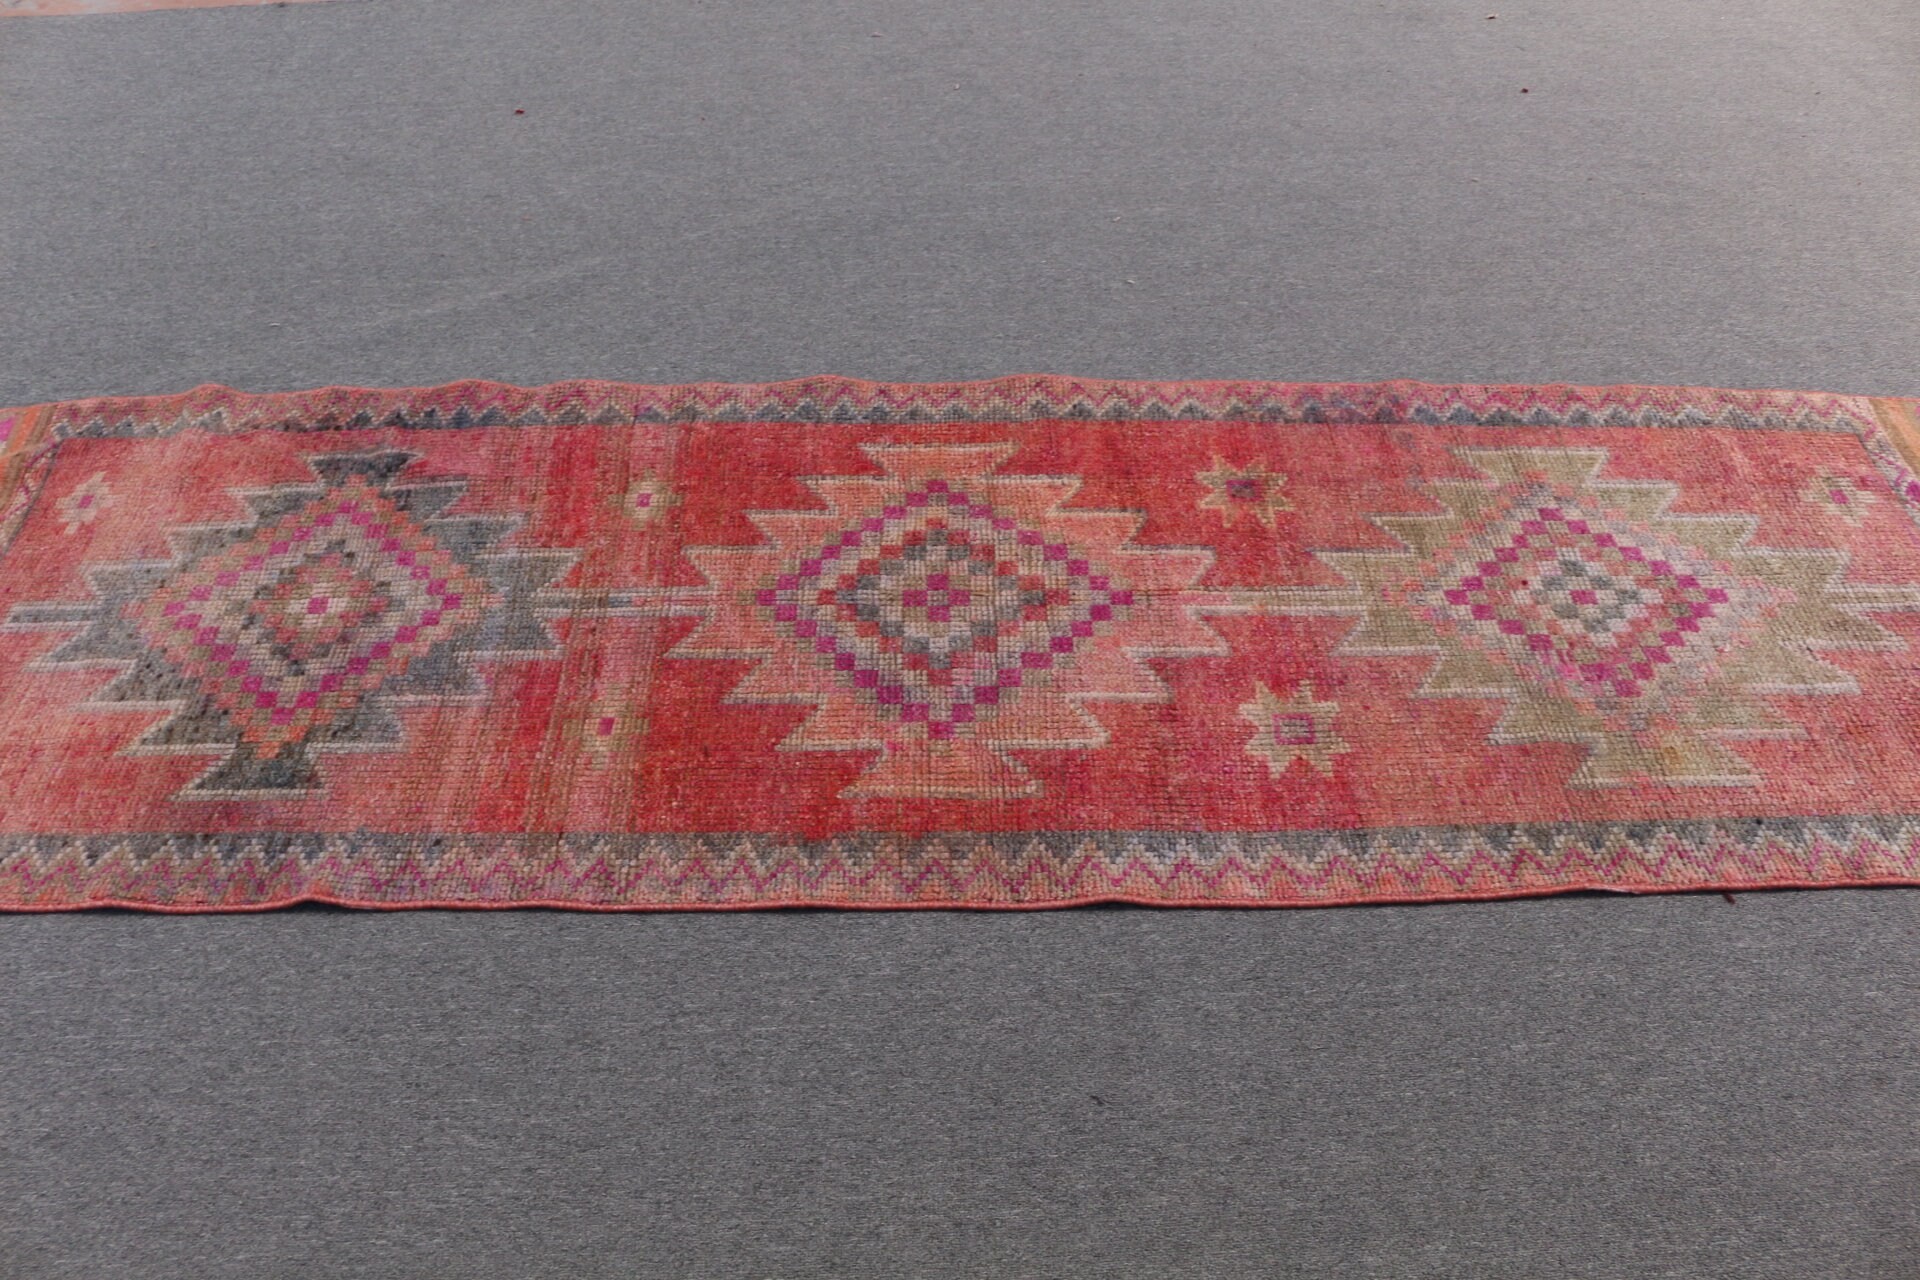 2.9x9.4 ft Runner Rug, Oriental Rugs, Pink Wool Rug, Flatweave Rug, Rugs for Corridor, Turkish Rug, Vintage Rug, Hallway Rug, Antique Rug